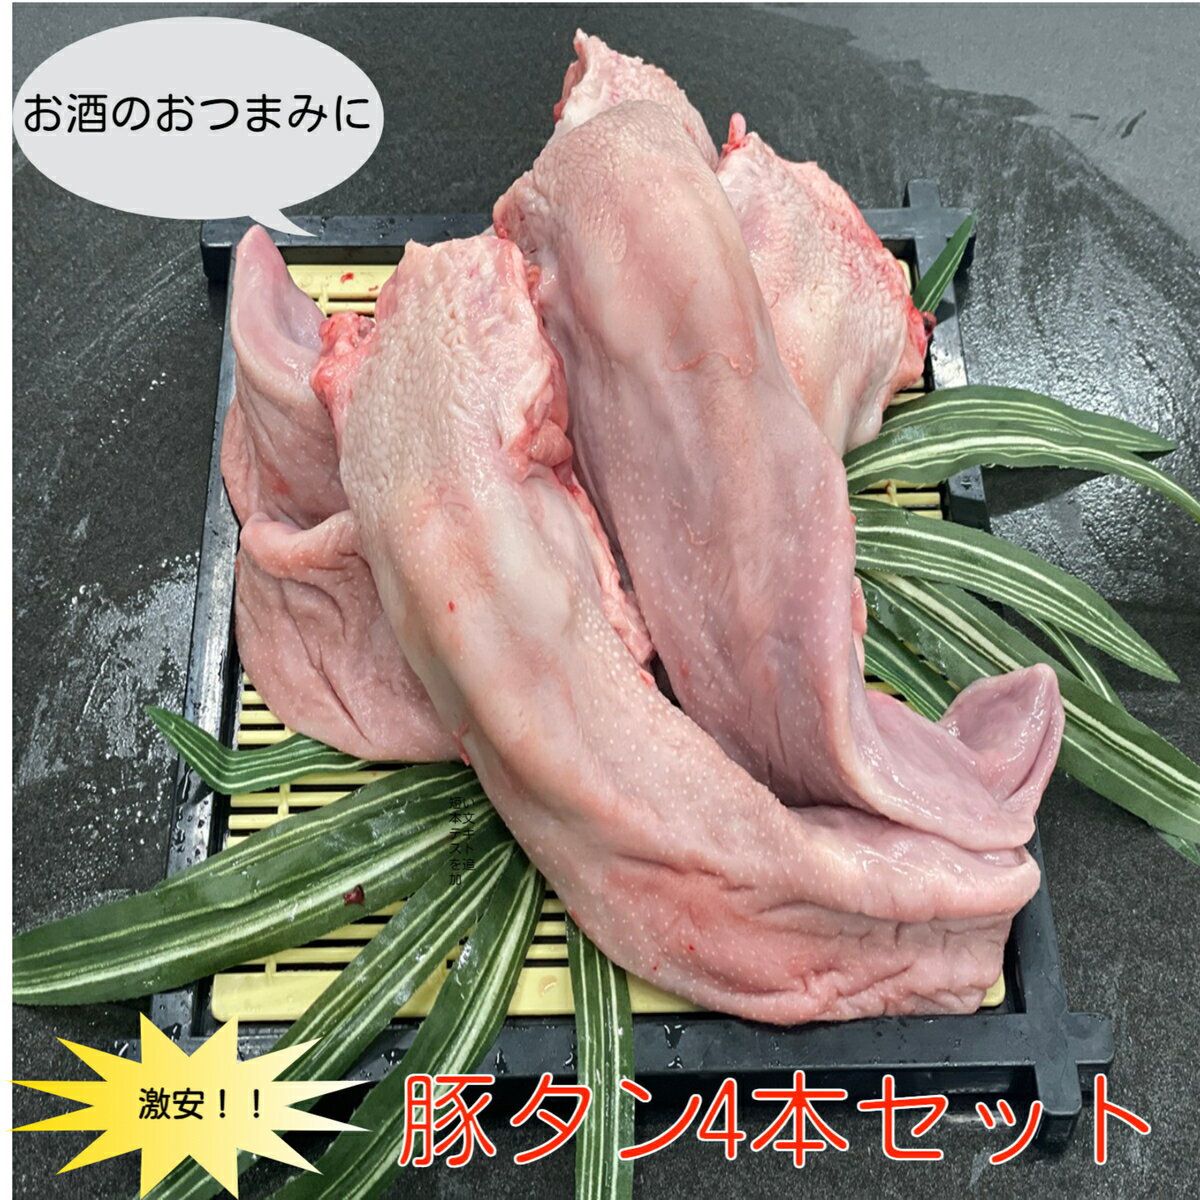 豚タン 4本セット 0.9~1.1kg メガ盛り おうちご飯 グルメ バーベキュー キャンプ 送料別 